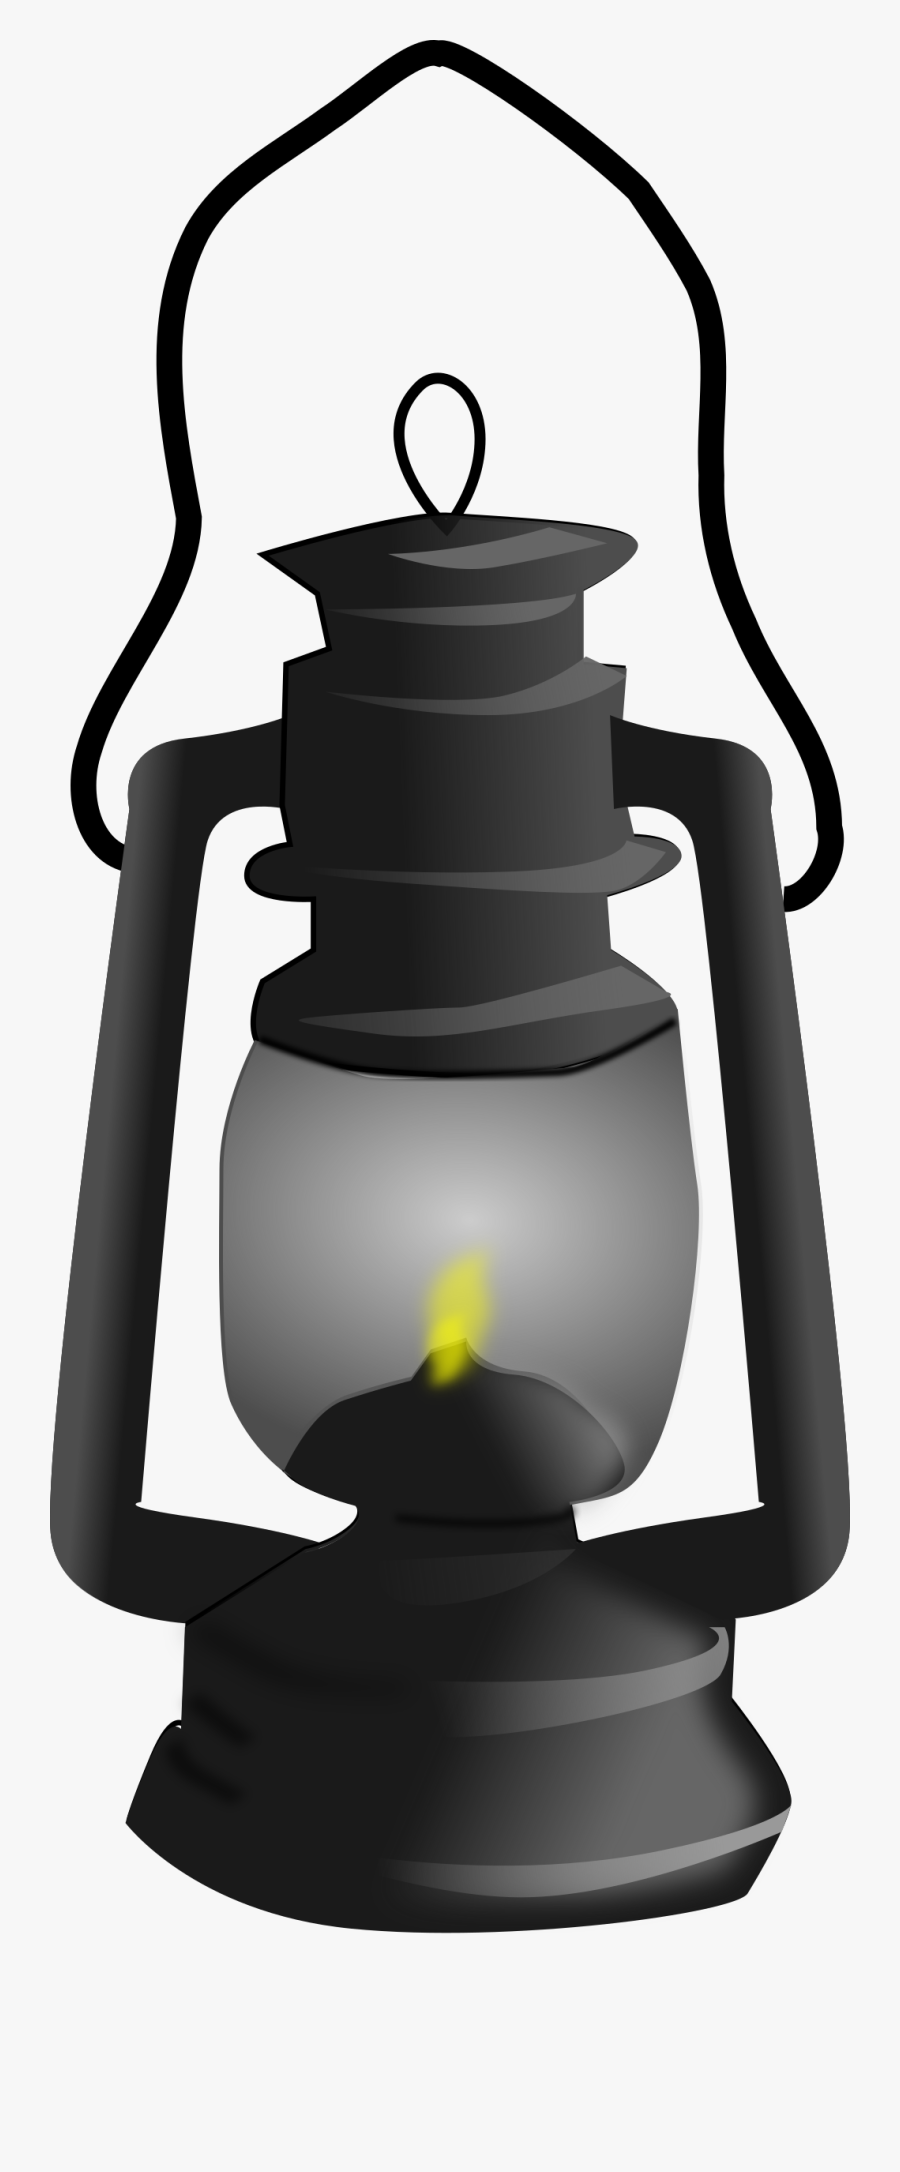 Lantern - Clipart - Lantern Clipart, Transparent Clipart